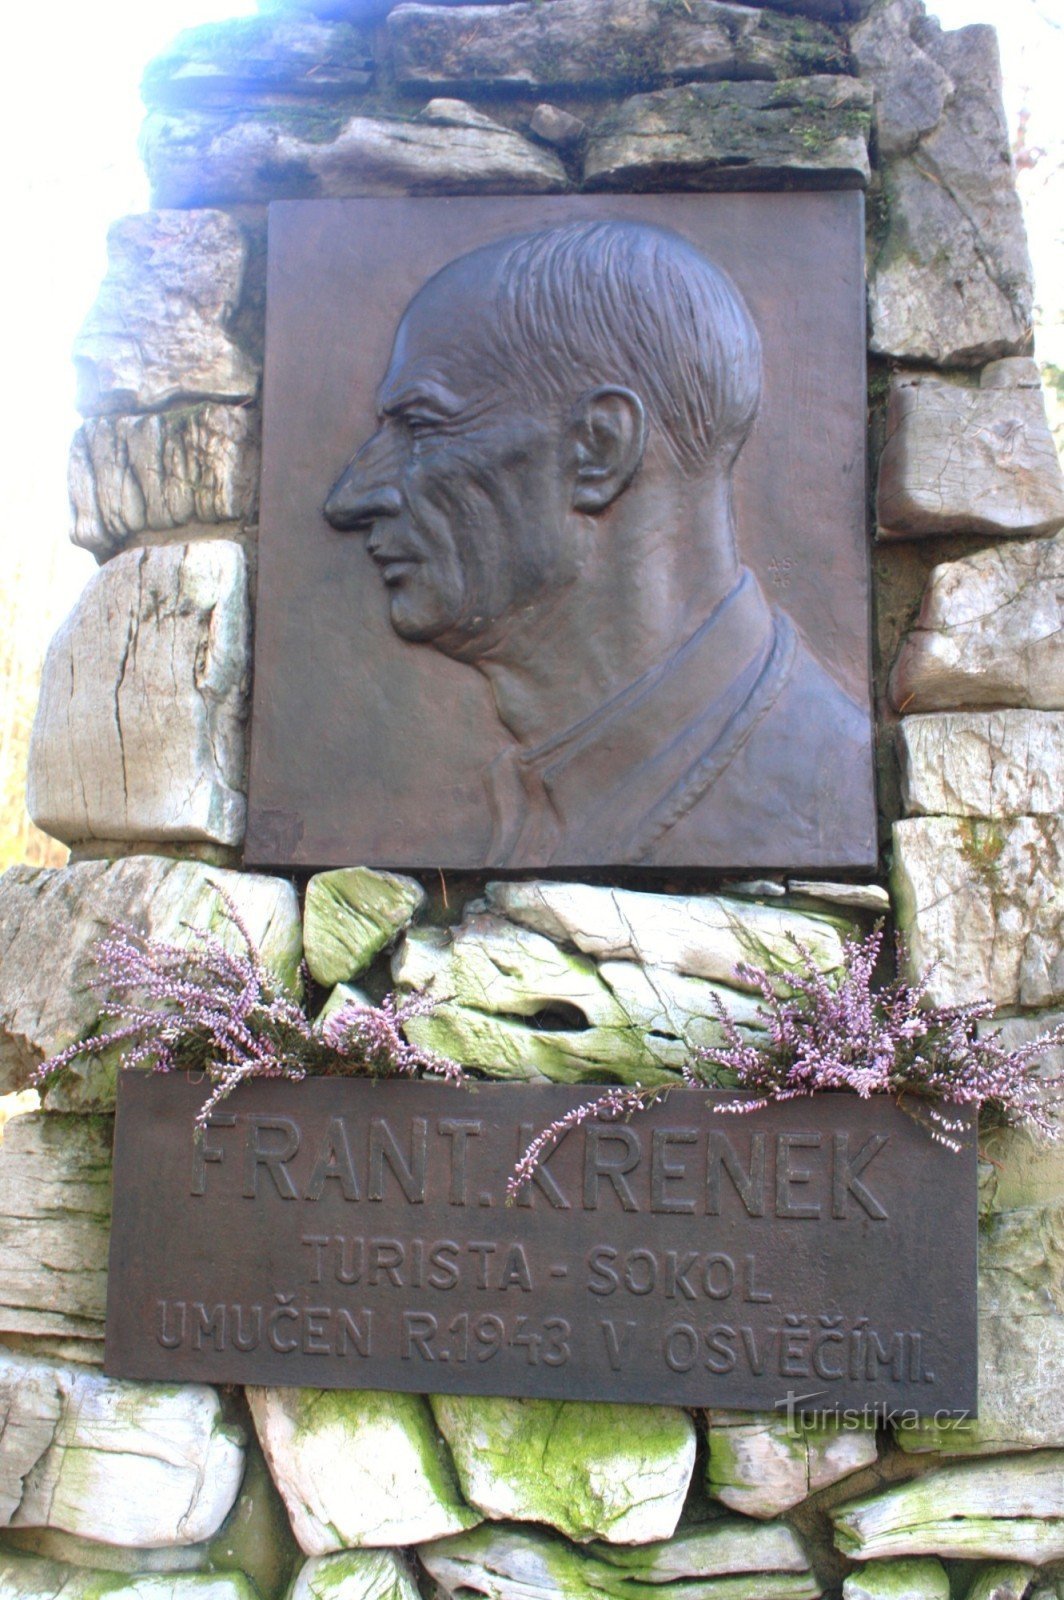 μνημείο του Křenk